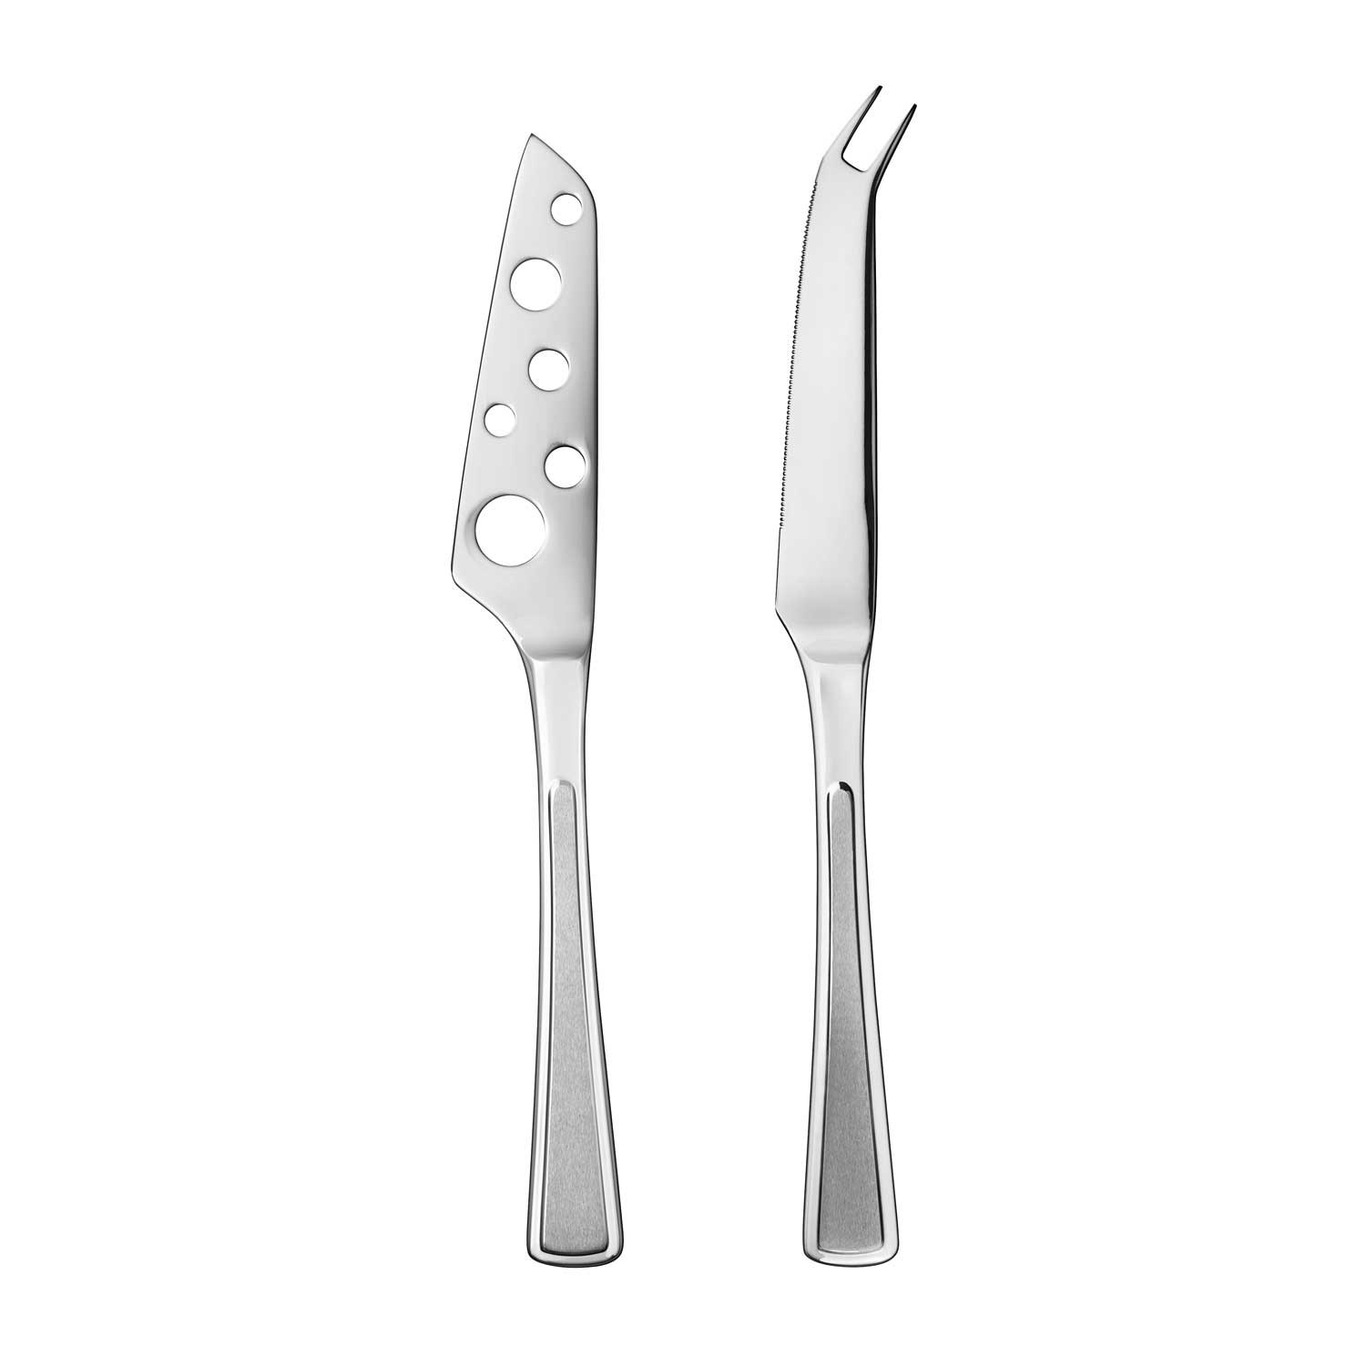 https://royaldesign.com/image/2/hardanger-ramona-cheese-knife-set-2-pieces-0?w=800&quality=80